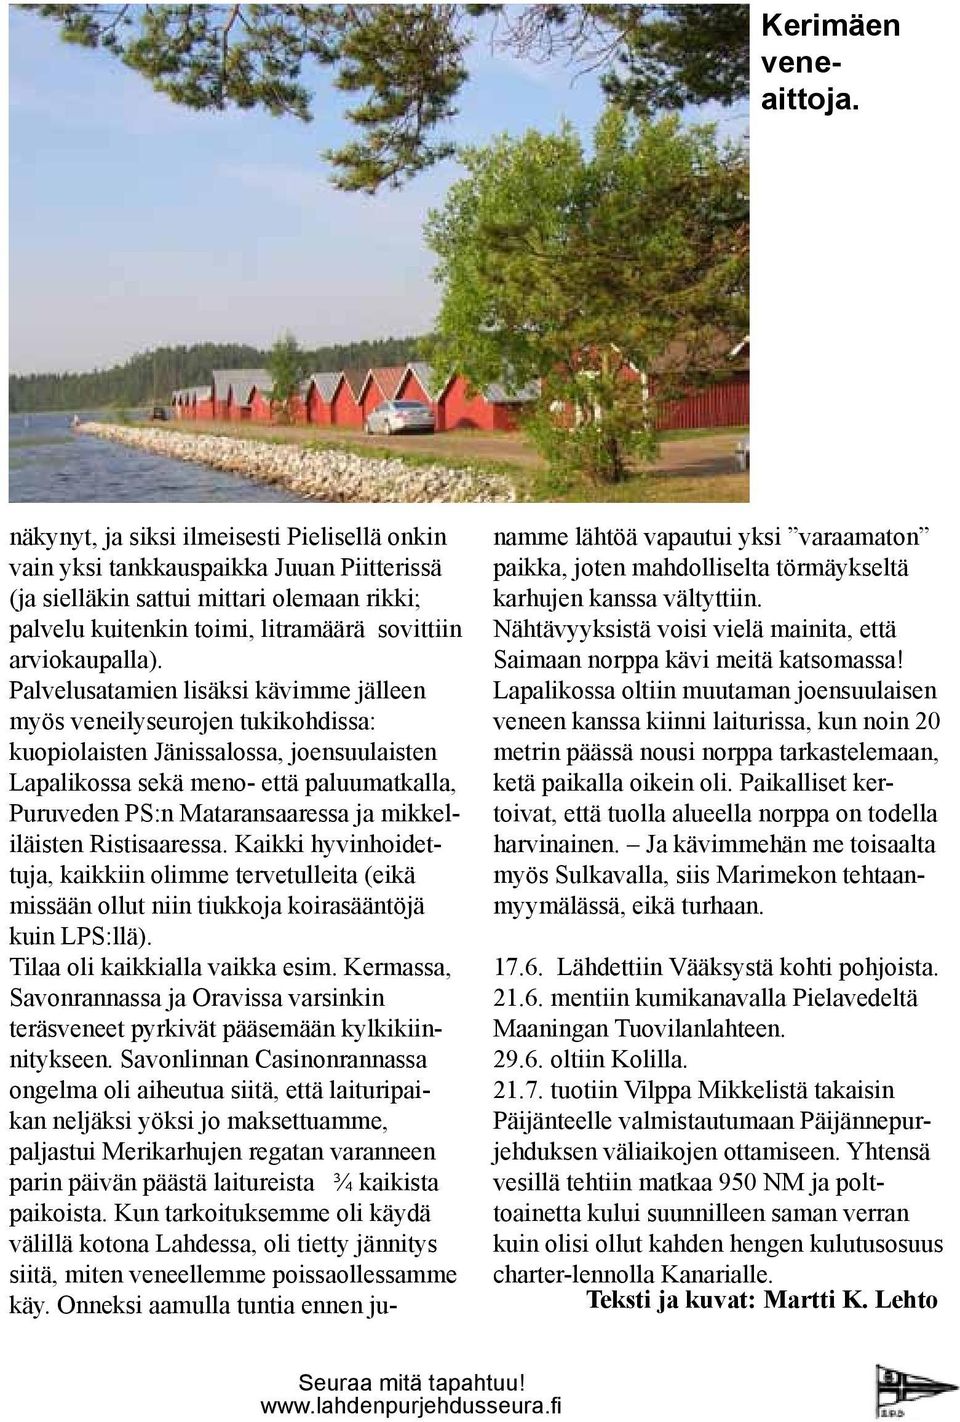 Palvelusatamien lisäksi kävimme jälleen myös veneilyseurojen tukikohdissa: kuopiolaisten Jänissalossa, joensuulaisten Lapalikossa sekä meno- että paluumatkalla, Puruveden PS:n Mataransaaressa ja